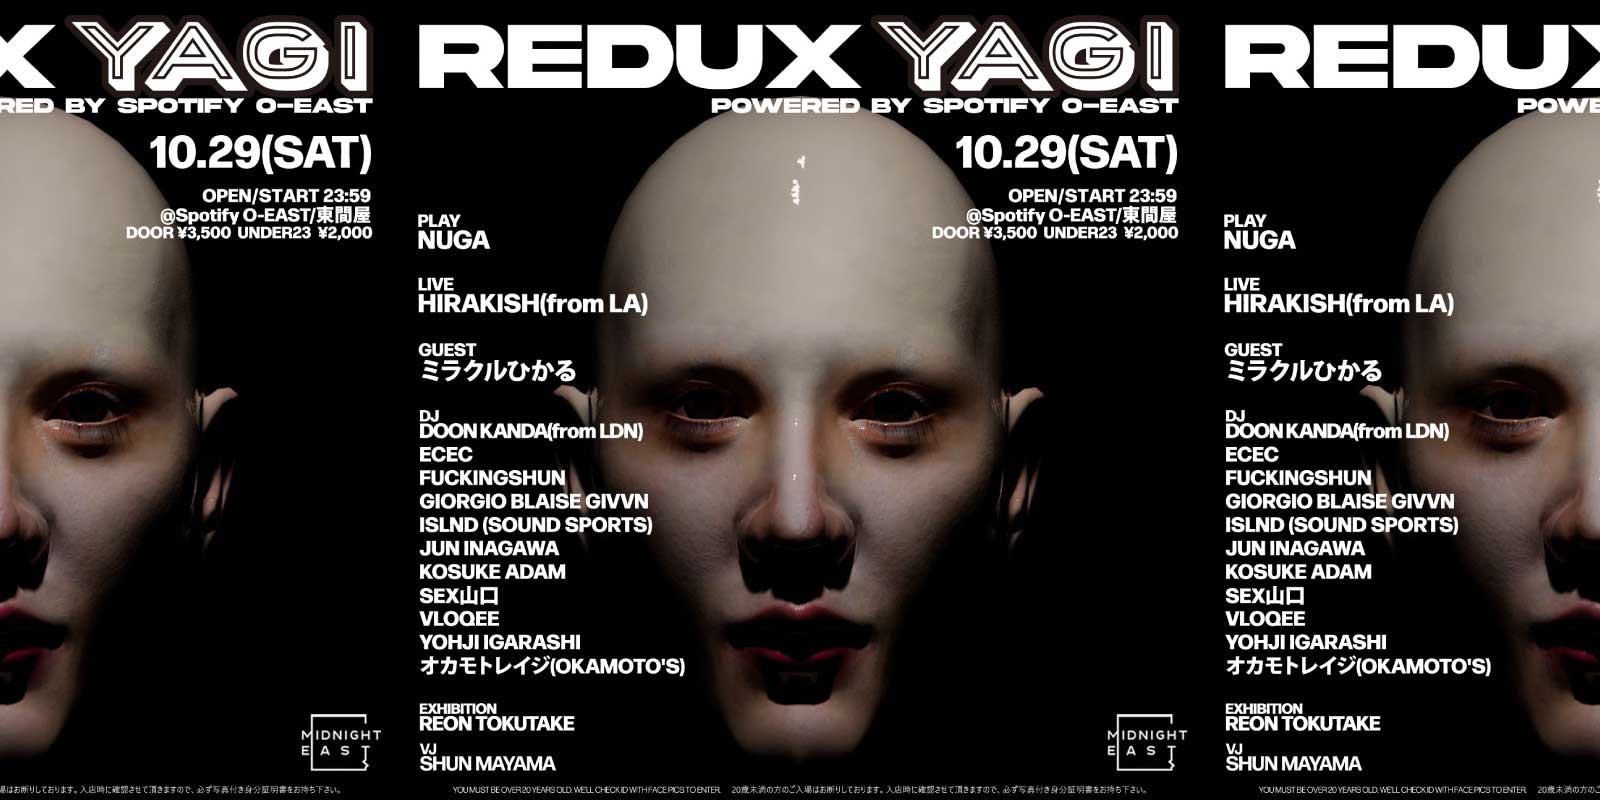 REDUX YAGI powered by Spotify O-EAST / 東間屋